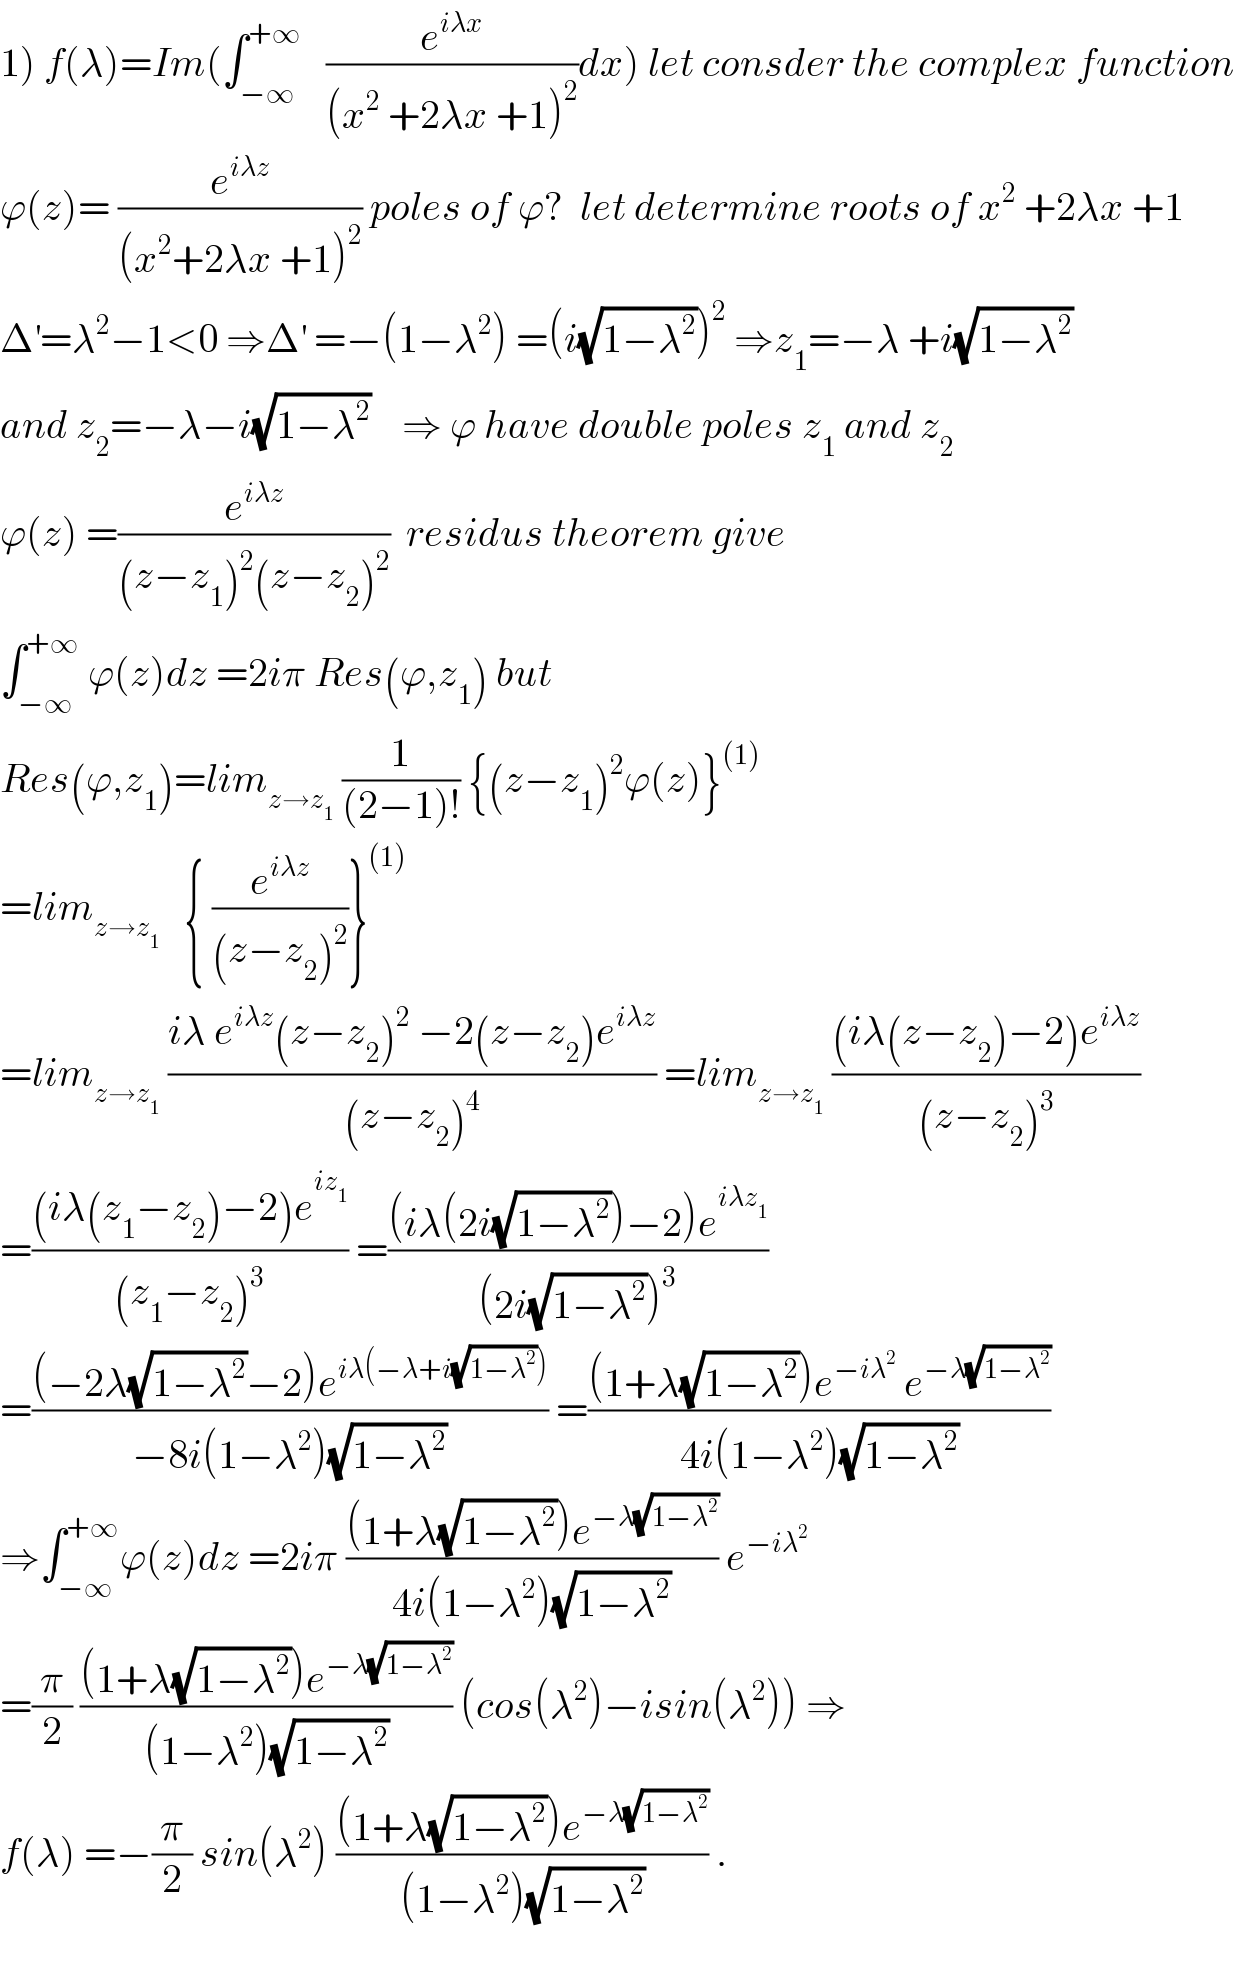 1) f(λ)=Im(∫_(−∞) ^(+∞)    (e^(iλx) /((x^2  +2λx +1)^2 ))dx) let consder the complex function  ϕ(z)= (e^(iλz) /((x^2 +2λx +1)^2 )) poles of ϕ?  let determine roots of x^2  +2λx +1  Δ^′ =λ^2 −1<0 ⇒Δ^′  =−(1−λ^2 ) =(i(√(1−λ^2 )))^2  ⇒z_1 =−λ +i(√(1−λ^2 ))  and z_2 =−λ−i(√(1−λ^2 ))    ⇒ ϕ have double poles z_1  and z_2   ϕ(z) =(e^(iλz) /((z−z_1 )^2 (z−z_2 )^2 ))  residus theorem give  ∫_(−∞) ^(+∞)  ϕ(z)dz =2iπ Res(ϕ,z_1 ) but  Res(ϕ,z_1 )=lim_(z→z_1 )  (1/((2−1)!)) {(z−z_1 )^2 ϕ(z)}^((1))   =lim_(z→z_1 )    { (e^(iλz) /((z−z_2 )^2 ))}^((1))   =lim_(z→z_1 )  ((iλ e^(iλz) (z−z_2 )^2  −2(z−z_2 )e^(iλz) )/((z−z_2 )^4 )) =lim_(z→z_1 )  (((iλ(z−z_2 )−2)e^(iλz) )/((z−z_2 )^3 ))  =(((iλ(z_1 −z_2 )−2)e^(iz_1 ) )/((z_1 −z_2 )^3 )) =(((iλ(2i(√(1−λ^2 )))−2)e^(iλz_1 ) )/((2i(√(1−λ^2 )))^3 ))  =(((−2λ(√(1−λ^2 ))−2)e^(iλ(−λ+i(√(1−λ^2 )))) )/(−8i(1−λ^2 )(√(1−λ^2 )))) =(((1+λ(√(1−λ^2 )))e^(−iλ^2 )  e^(−λ(√(1−λ^2 ))) )/(4i(1−λ^2 )(√(1−λ^2 ))))  ⇒∫_(−∞) ^(+∞) ϕ(z)dz =2iπ (((1+λ(√(1−λ^2 )))e^(−λ(√(1−λ^2 ))) )/(4i(1−λ^2 )(√(1−λ^2 )))) e^(−iλ^2 )    =(π/2) (((1+λ(√(1−λ^2 )))e^(−λ(√(1−λ^2 ))) )/((1−λ^2 )(√(1−λ^2 )))) (cos(λ^2 )−isin(λ^2 )) ⇒  f(λ) =−(π/2) sin(λ^2 ) (((1+λ(√(1−λ^2 )))e^(−λ(√(1−λ^2 ))) )/((1−λ^2 )(√(1−λ^2 )))) .    